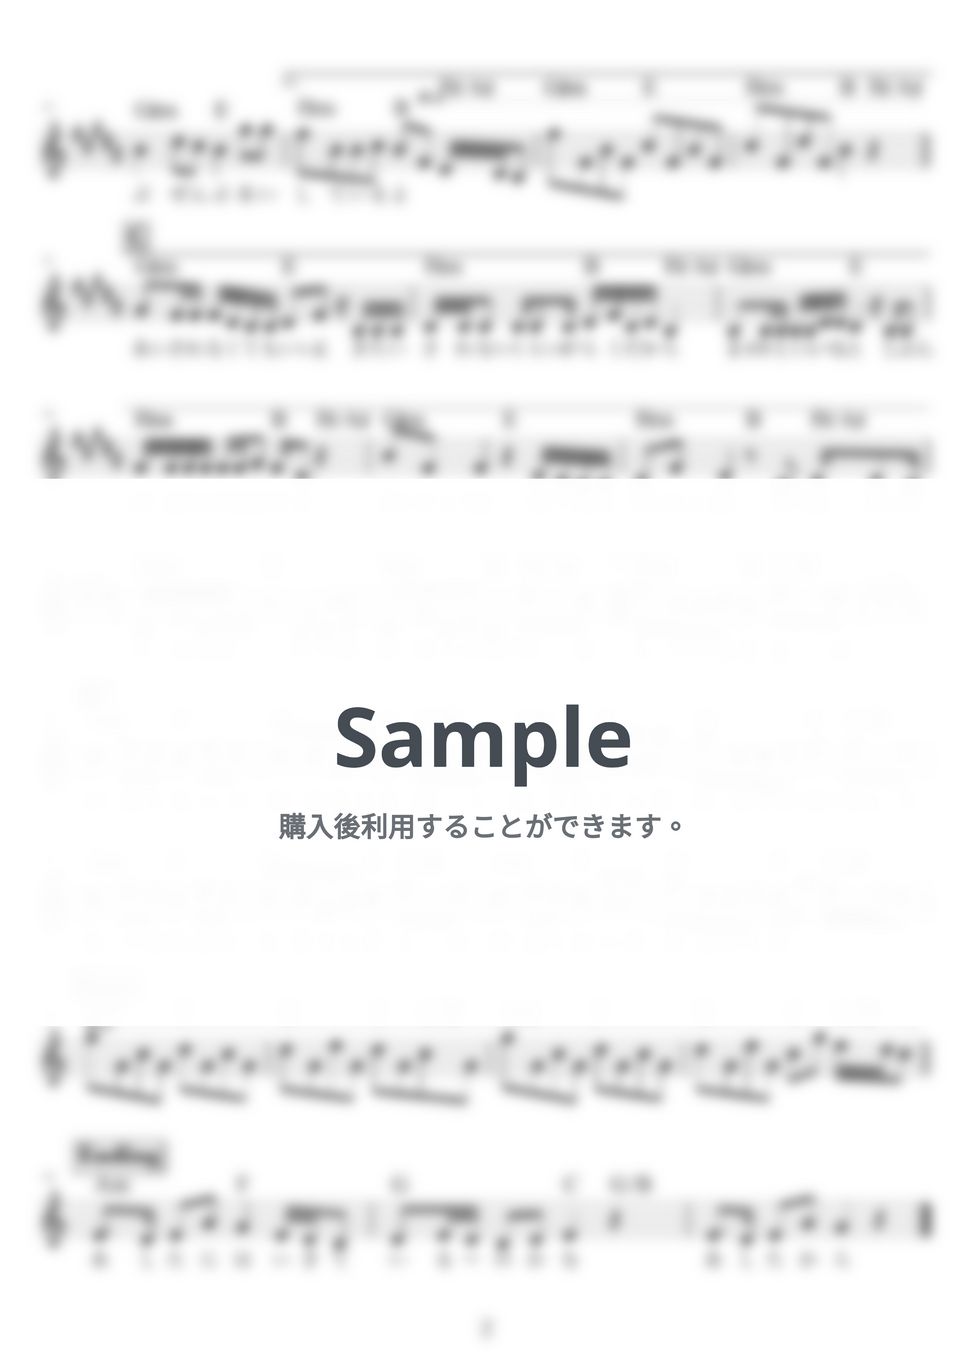 水野あつ - 生きる by NOTES music